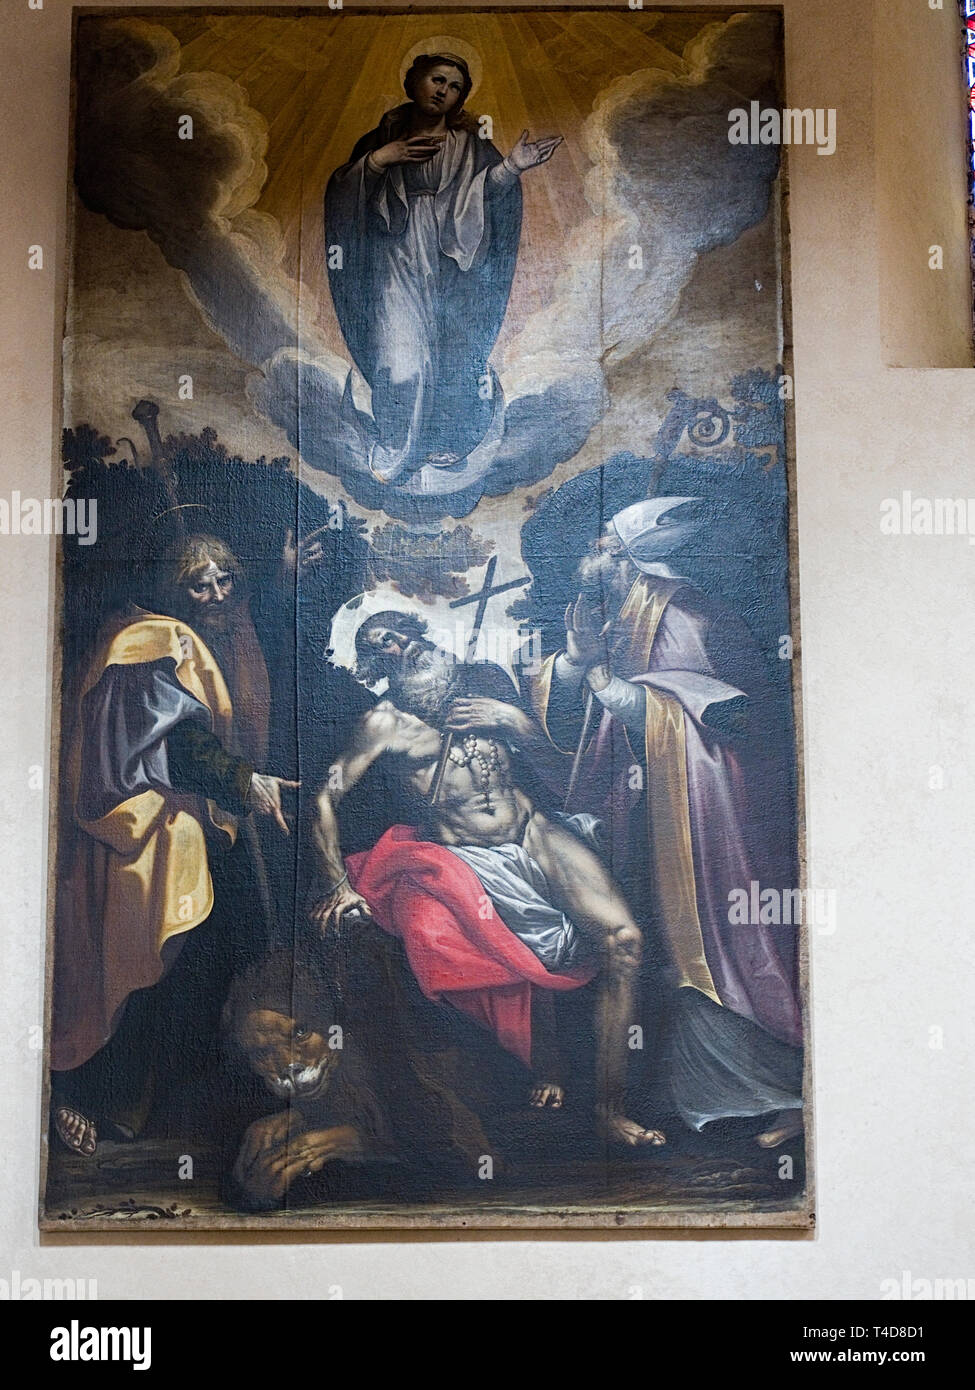 Todi Umbria Italia Italy. Cathedral of Santa Maria Annunziata interior artwork. 'Immacolata Concezione' by Ferrau Fenzoni 16th century. Stock Photo